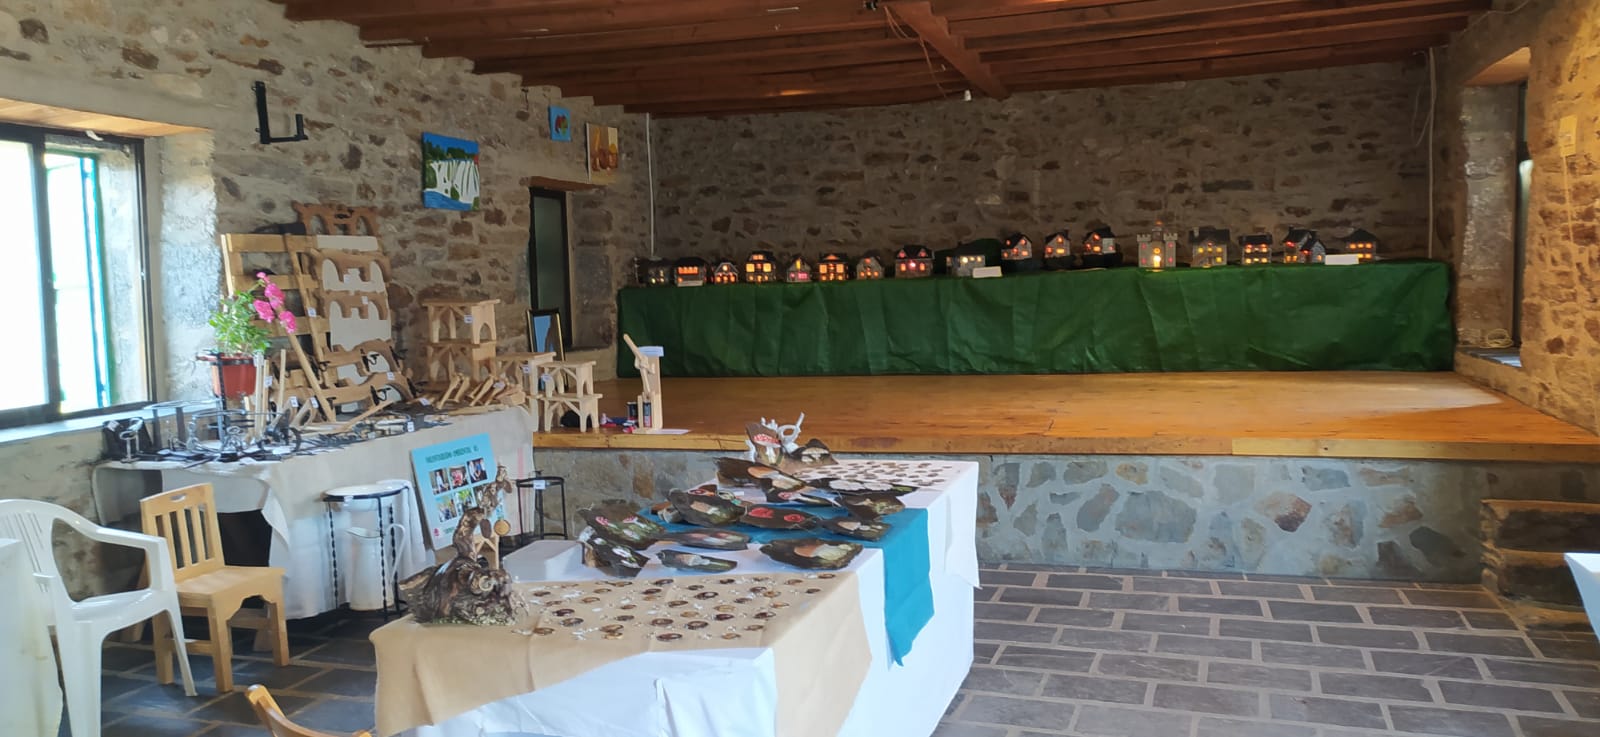 Feria de artesanía en Vigo de Sanabria. Foto: David Fernández Matellan